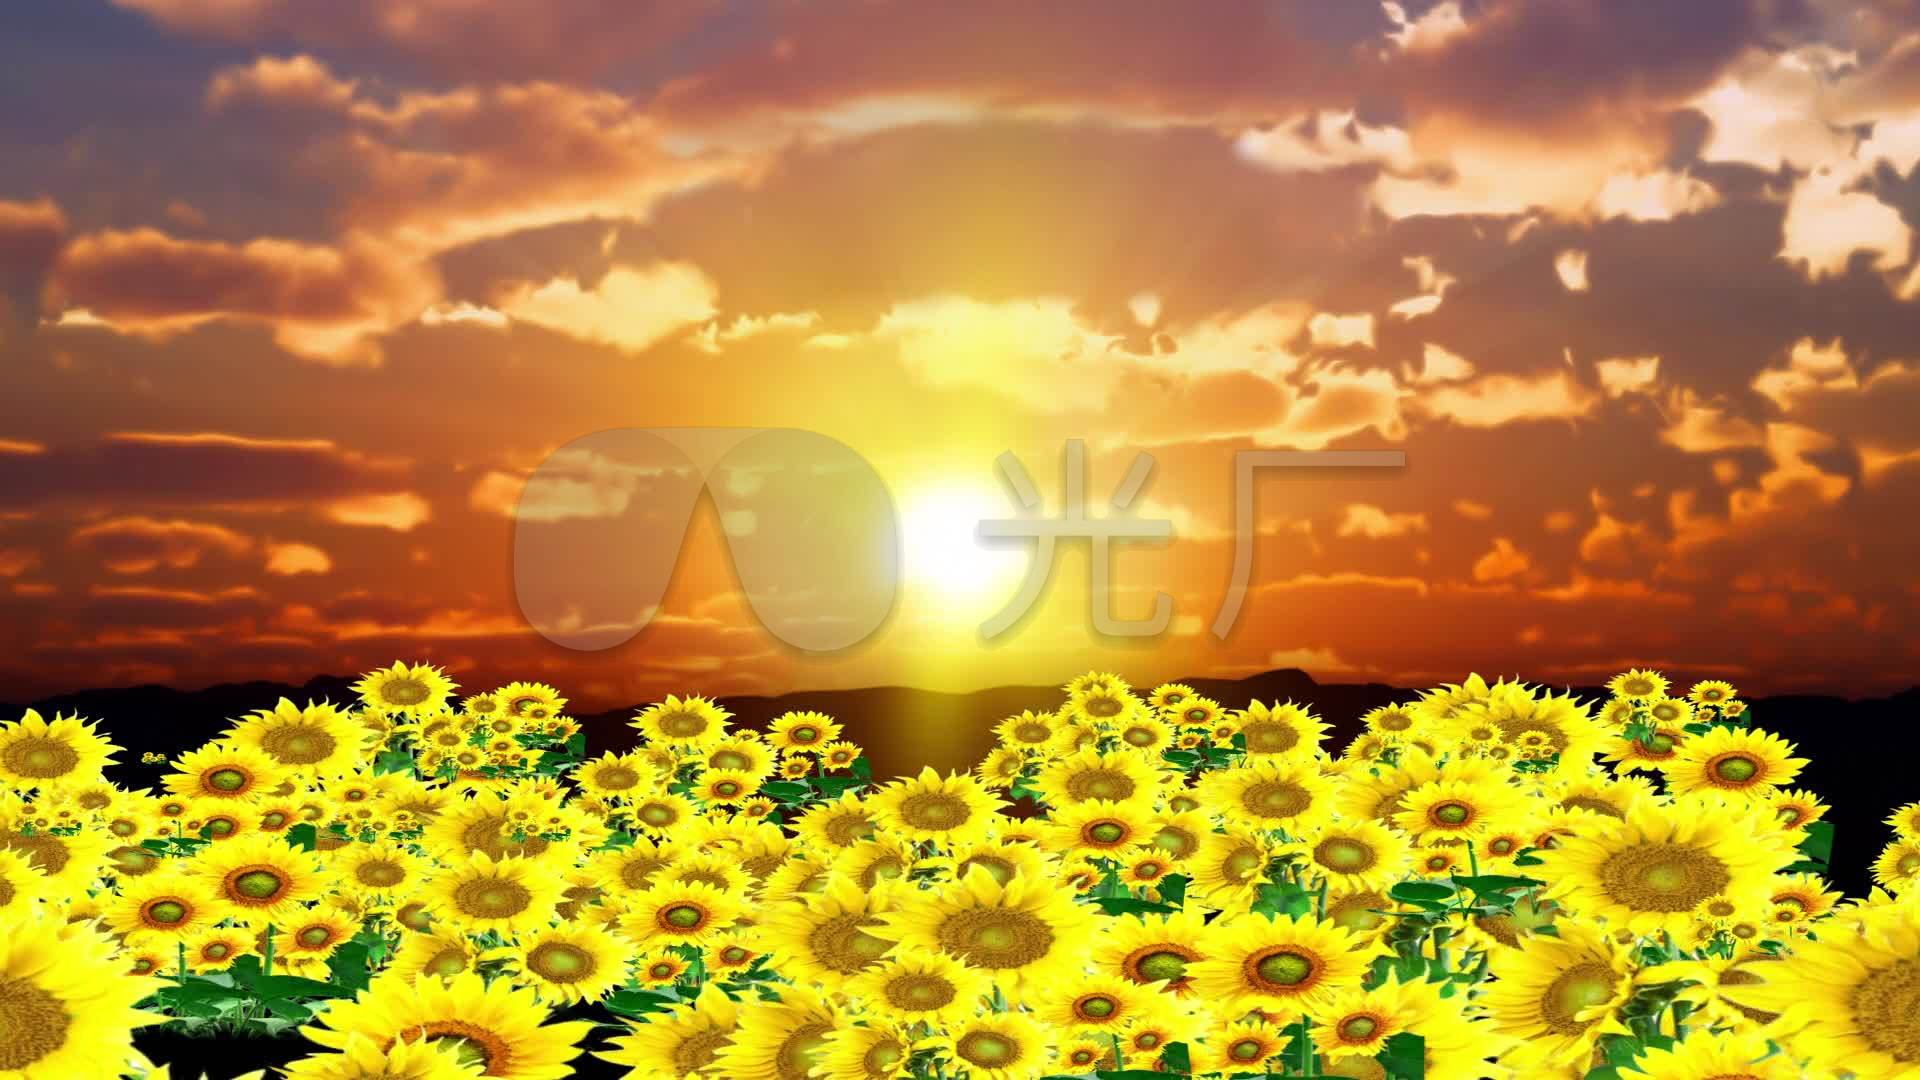 阳光灿烂的夏天壁纸_风景_太平洋电脑网